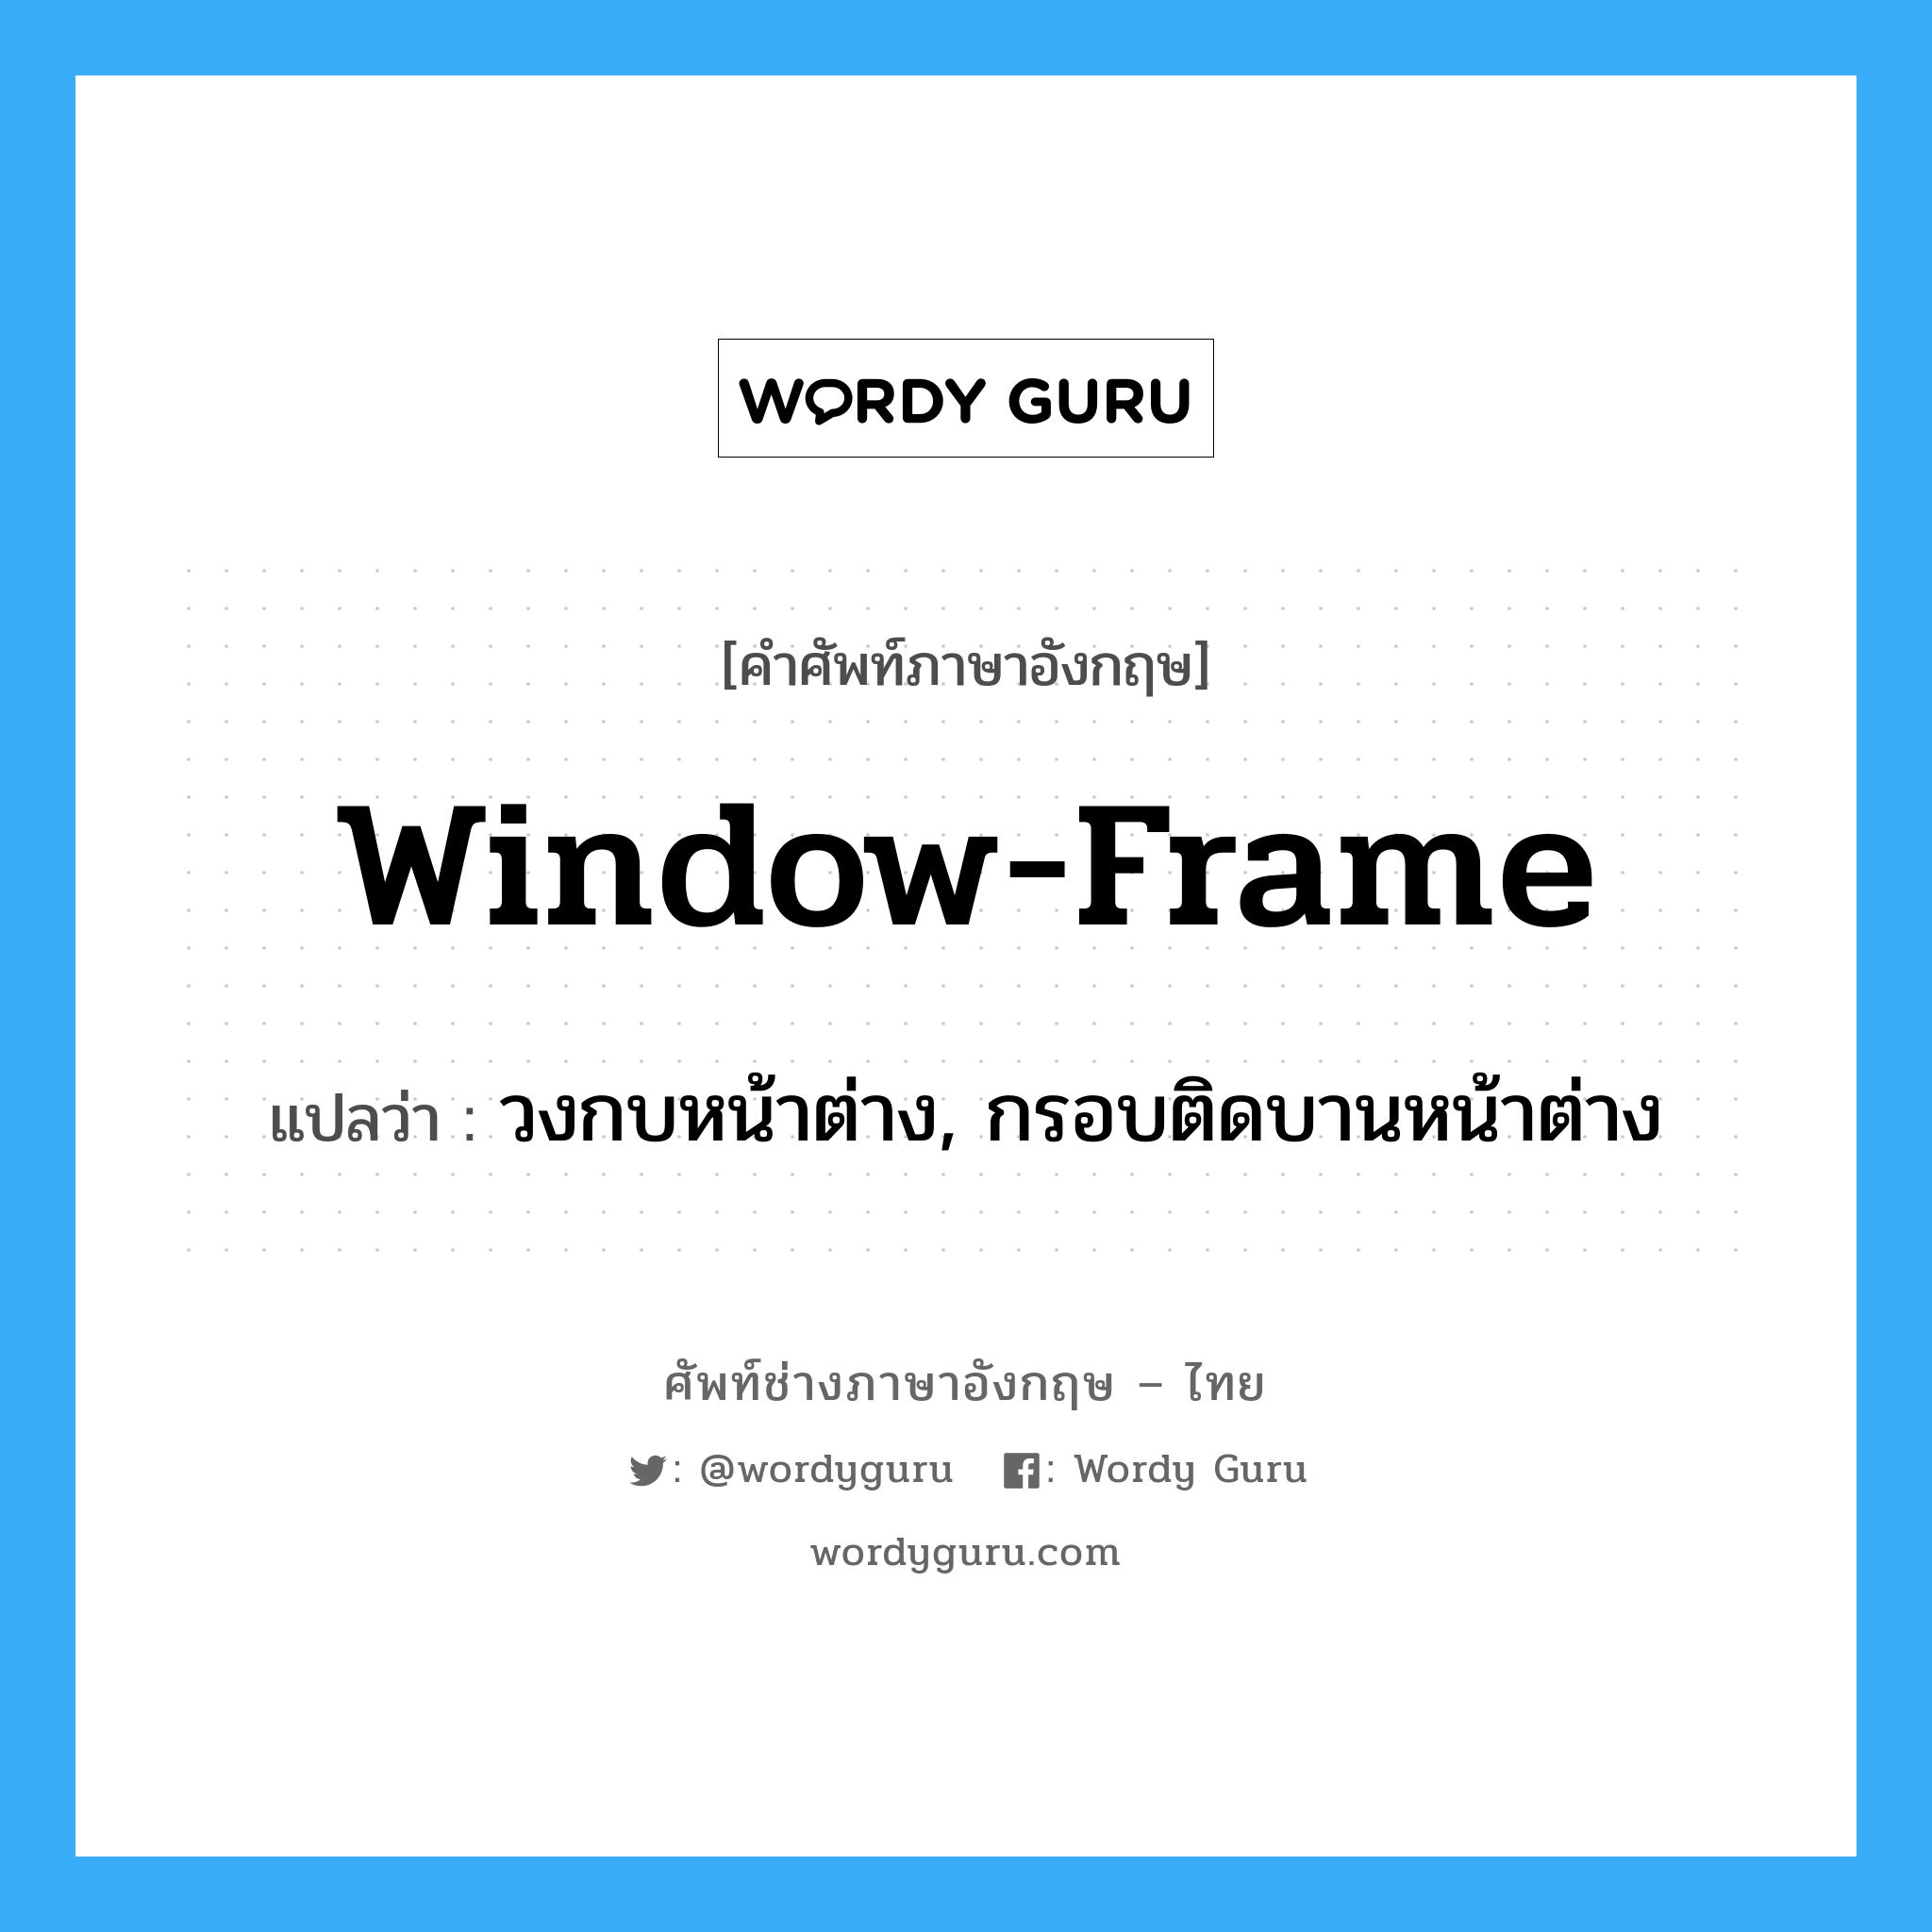 window frame แปลว่า?, คำศัพท์ช่างภาษาอังกฤษ - ไทย window-frame คำศัพท์ภาษาอังกฤษ window-frame แปลว่า วงกบหน้าต่าง, กรอบติดบานหน้าต่าง